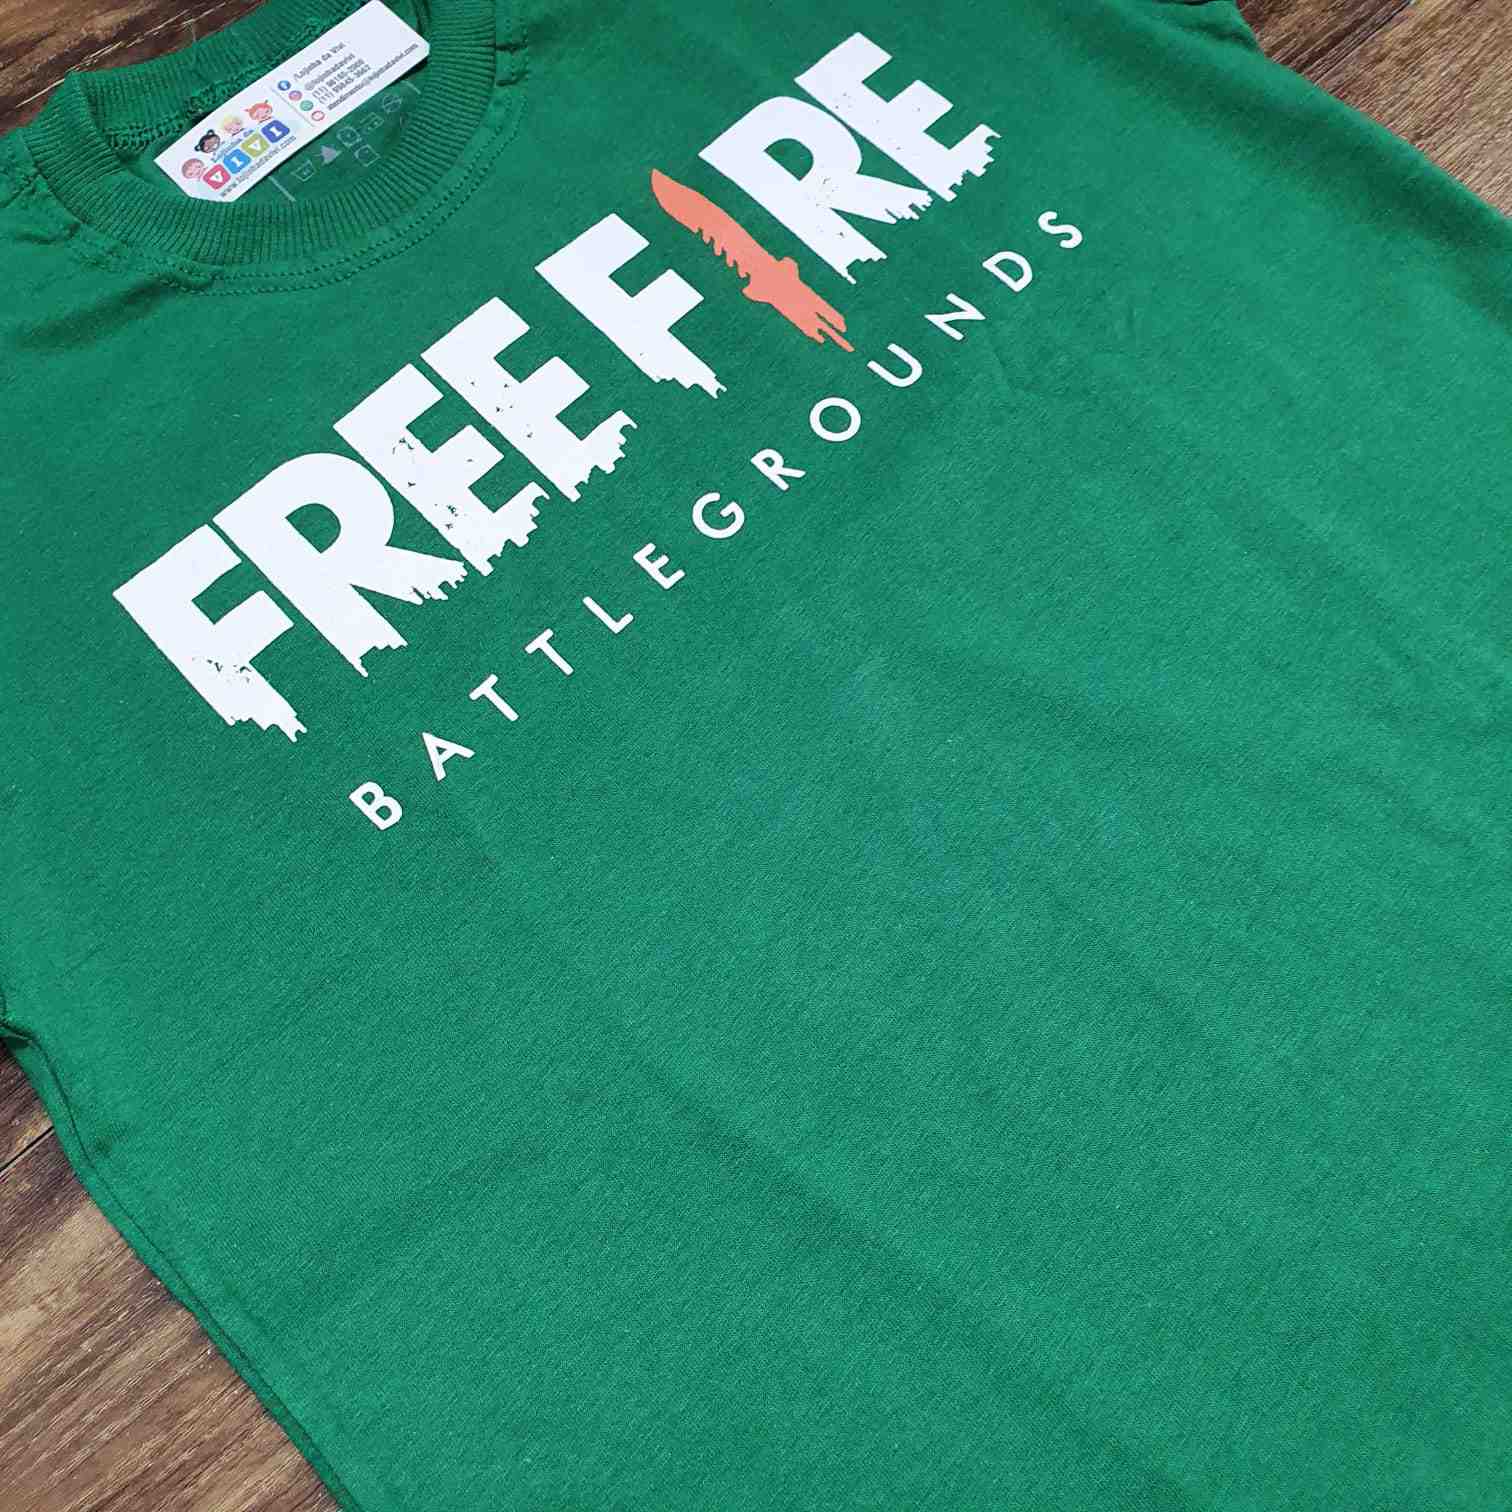 Camiseta Infantil Verde Free Fire